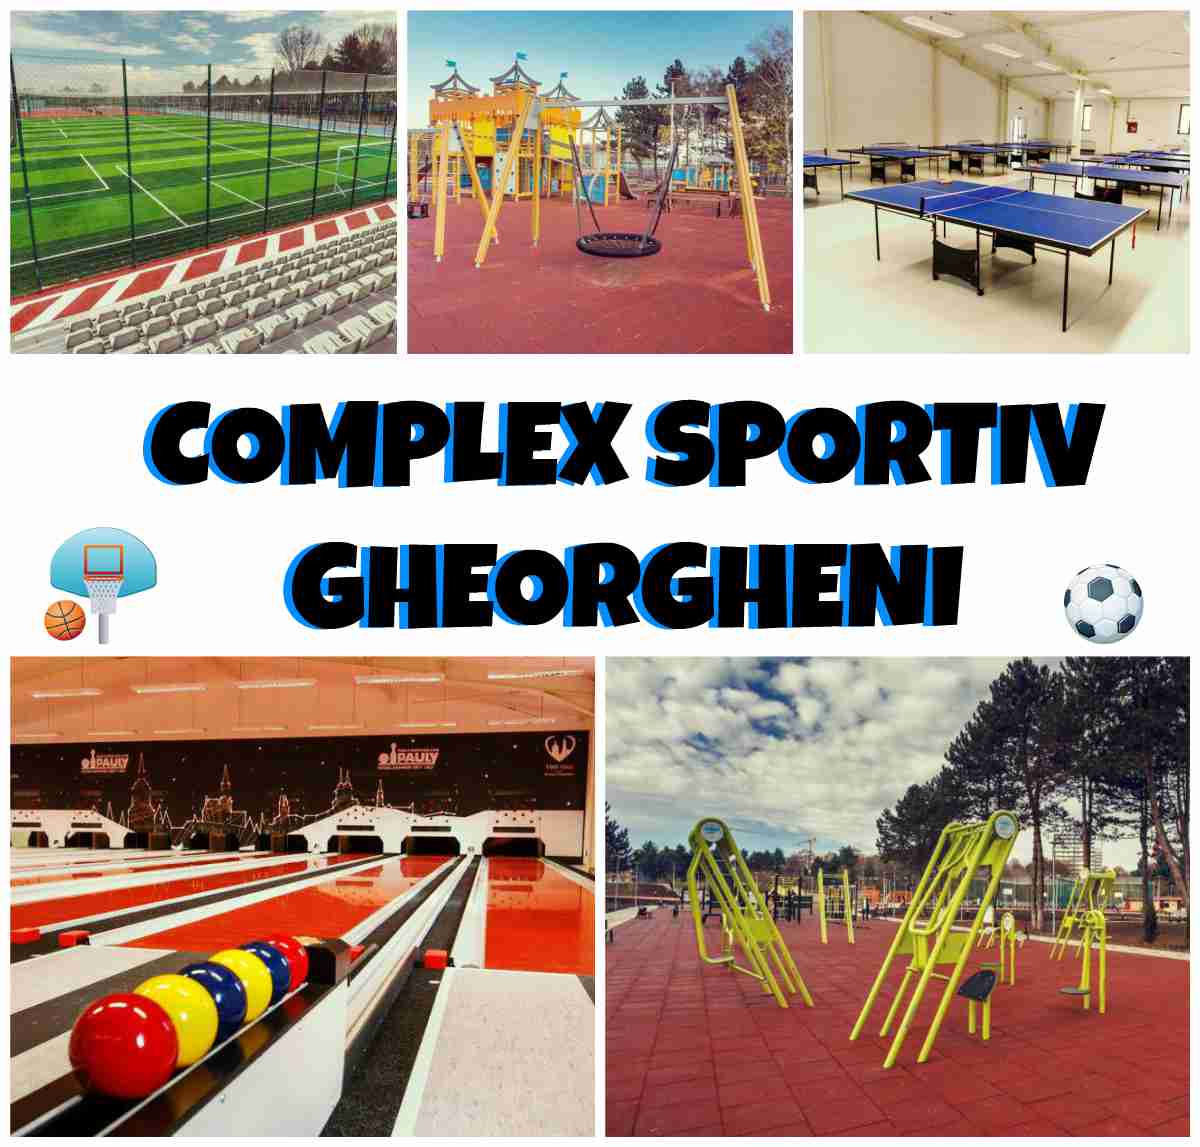 mimic Albany Sinewi Complex Sportiv Gheorgheni Cluj. Locuri de Joacă şi Acces Gratuit